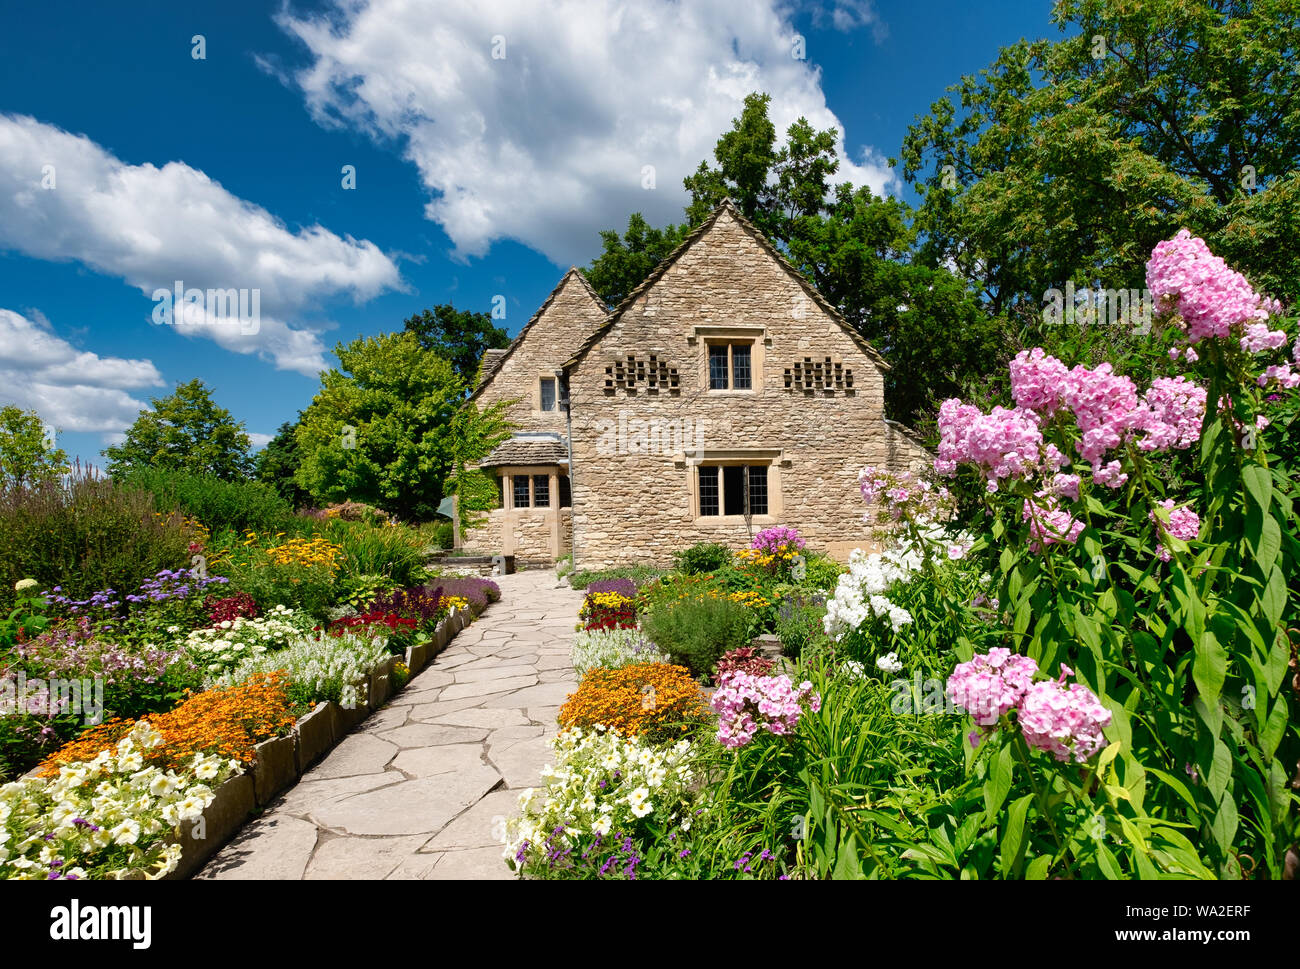 Cotswold Cottage et ses jardins anglais, situé dans la région de Greenfield Village à l'Henry Ford Museum situé à Dearborn, Michigan, USA Banque D'Images